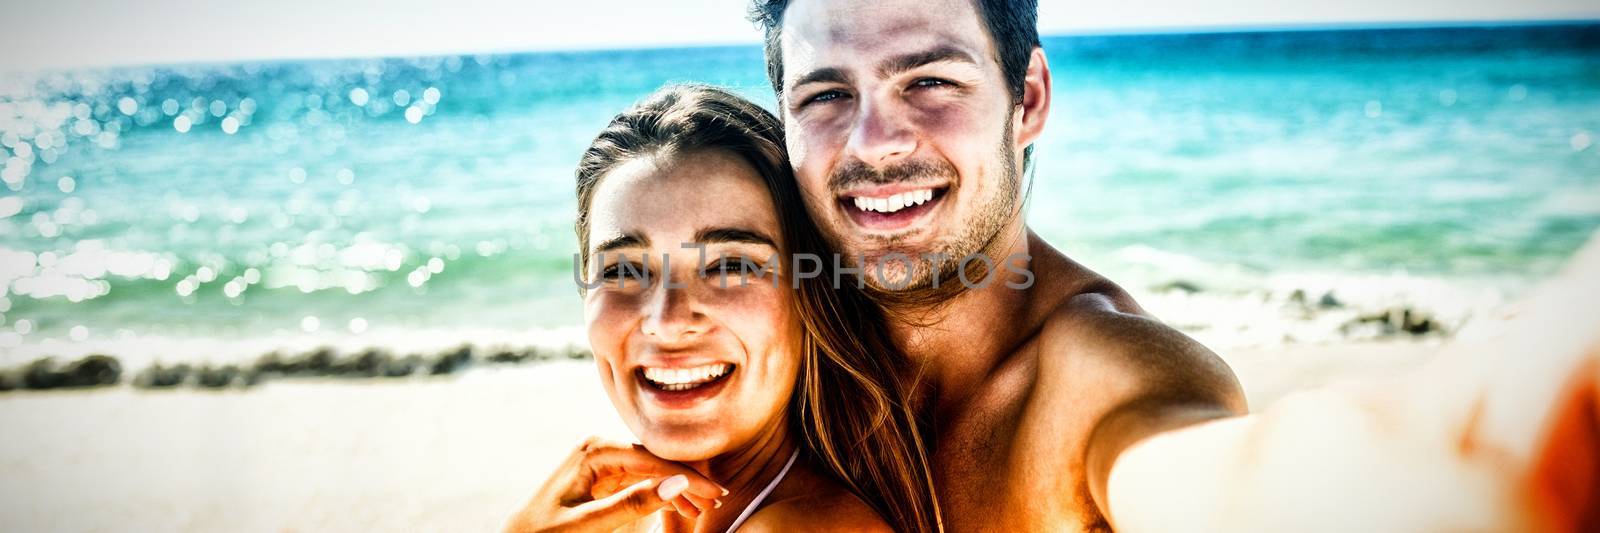 Couple taking a selfie by Wavebreakmedia